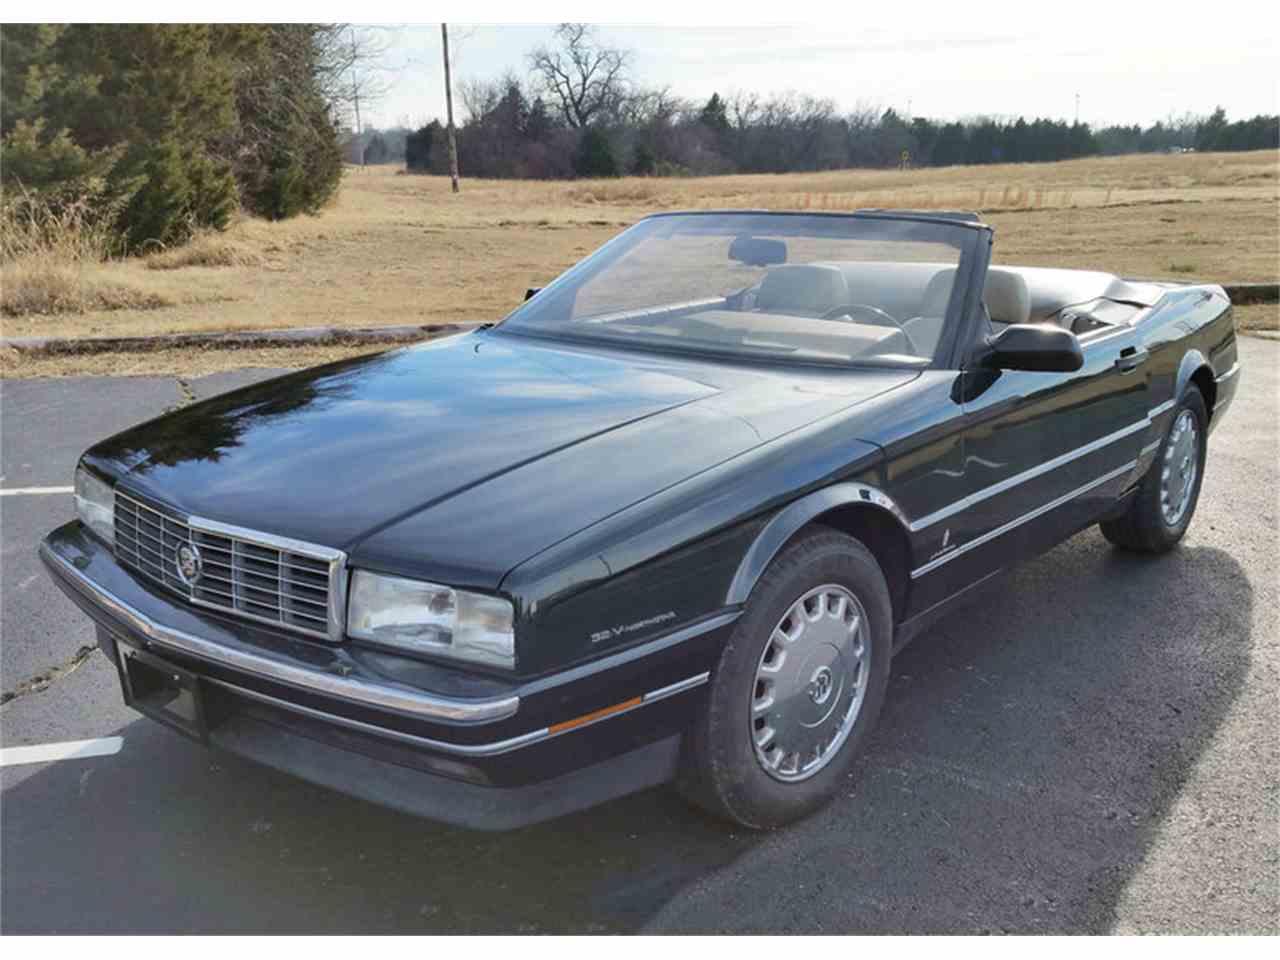 Cadillac Allante 1989 - 1996 Cabriolet #2